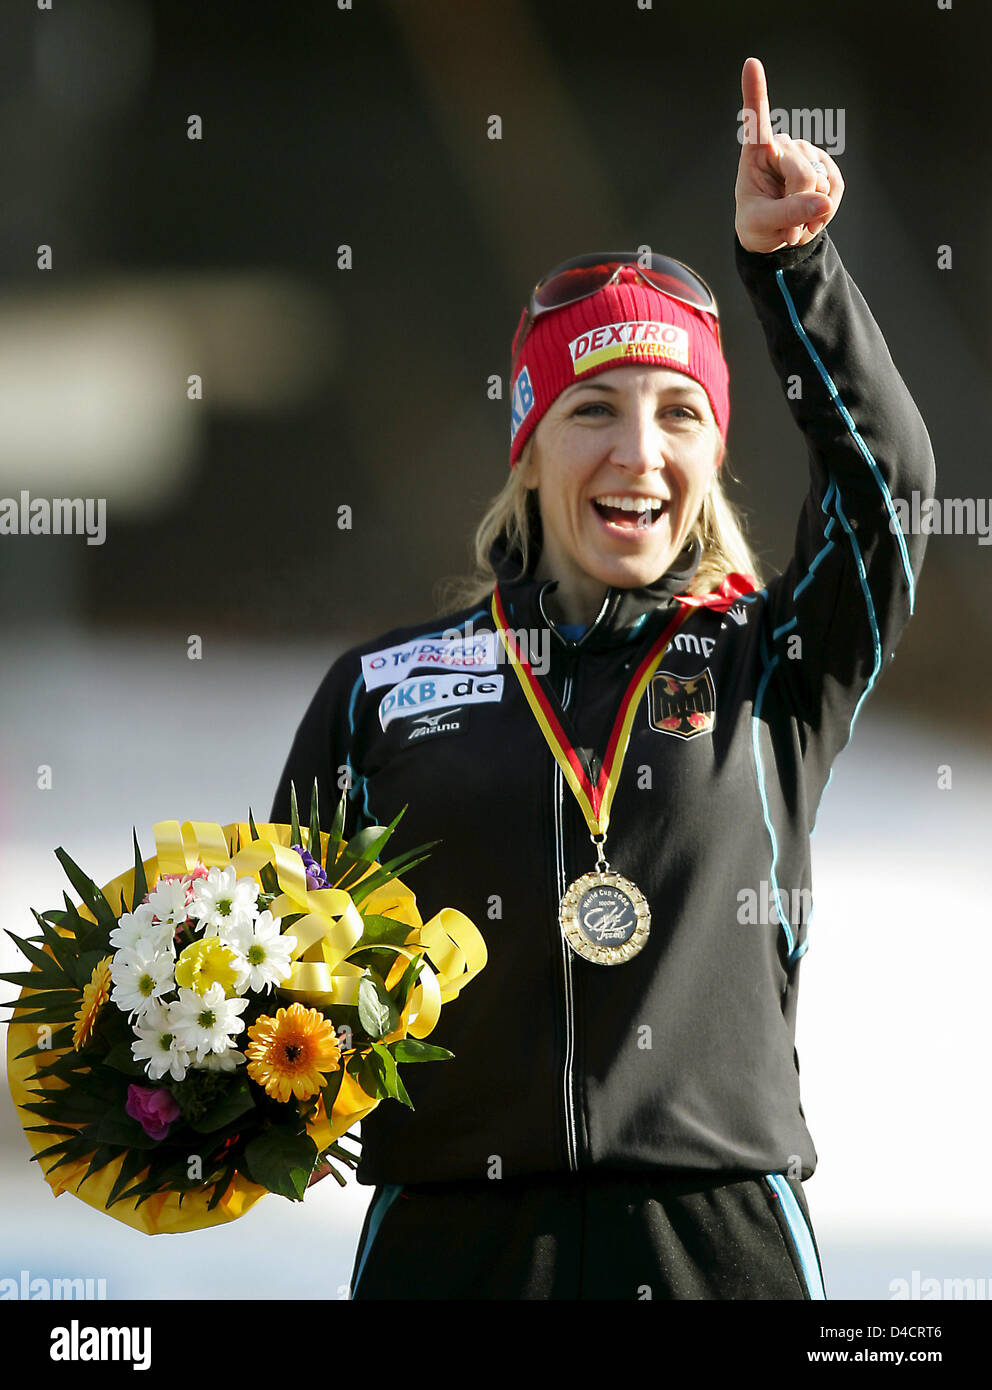 Deutsch Anni Friesinger feiert ihre Sieges in der 1000m-Wettbewerb bei der Eisschnelllauf-Sprint-WM in Inzell, Süddeutschland, 17. Februar 2008. 31 Jahre alte Friesinger gewann ihr 54. Weltcuprennen in 01:16, 44 min. Foto: MATTHIAS SCHRADER Stockfoto